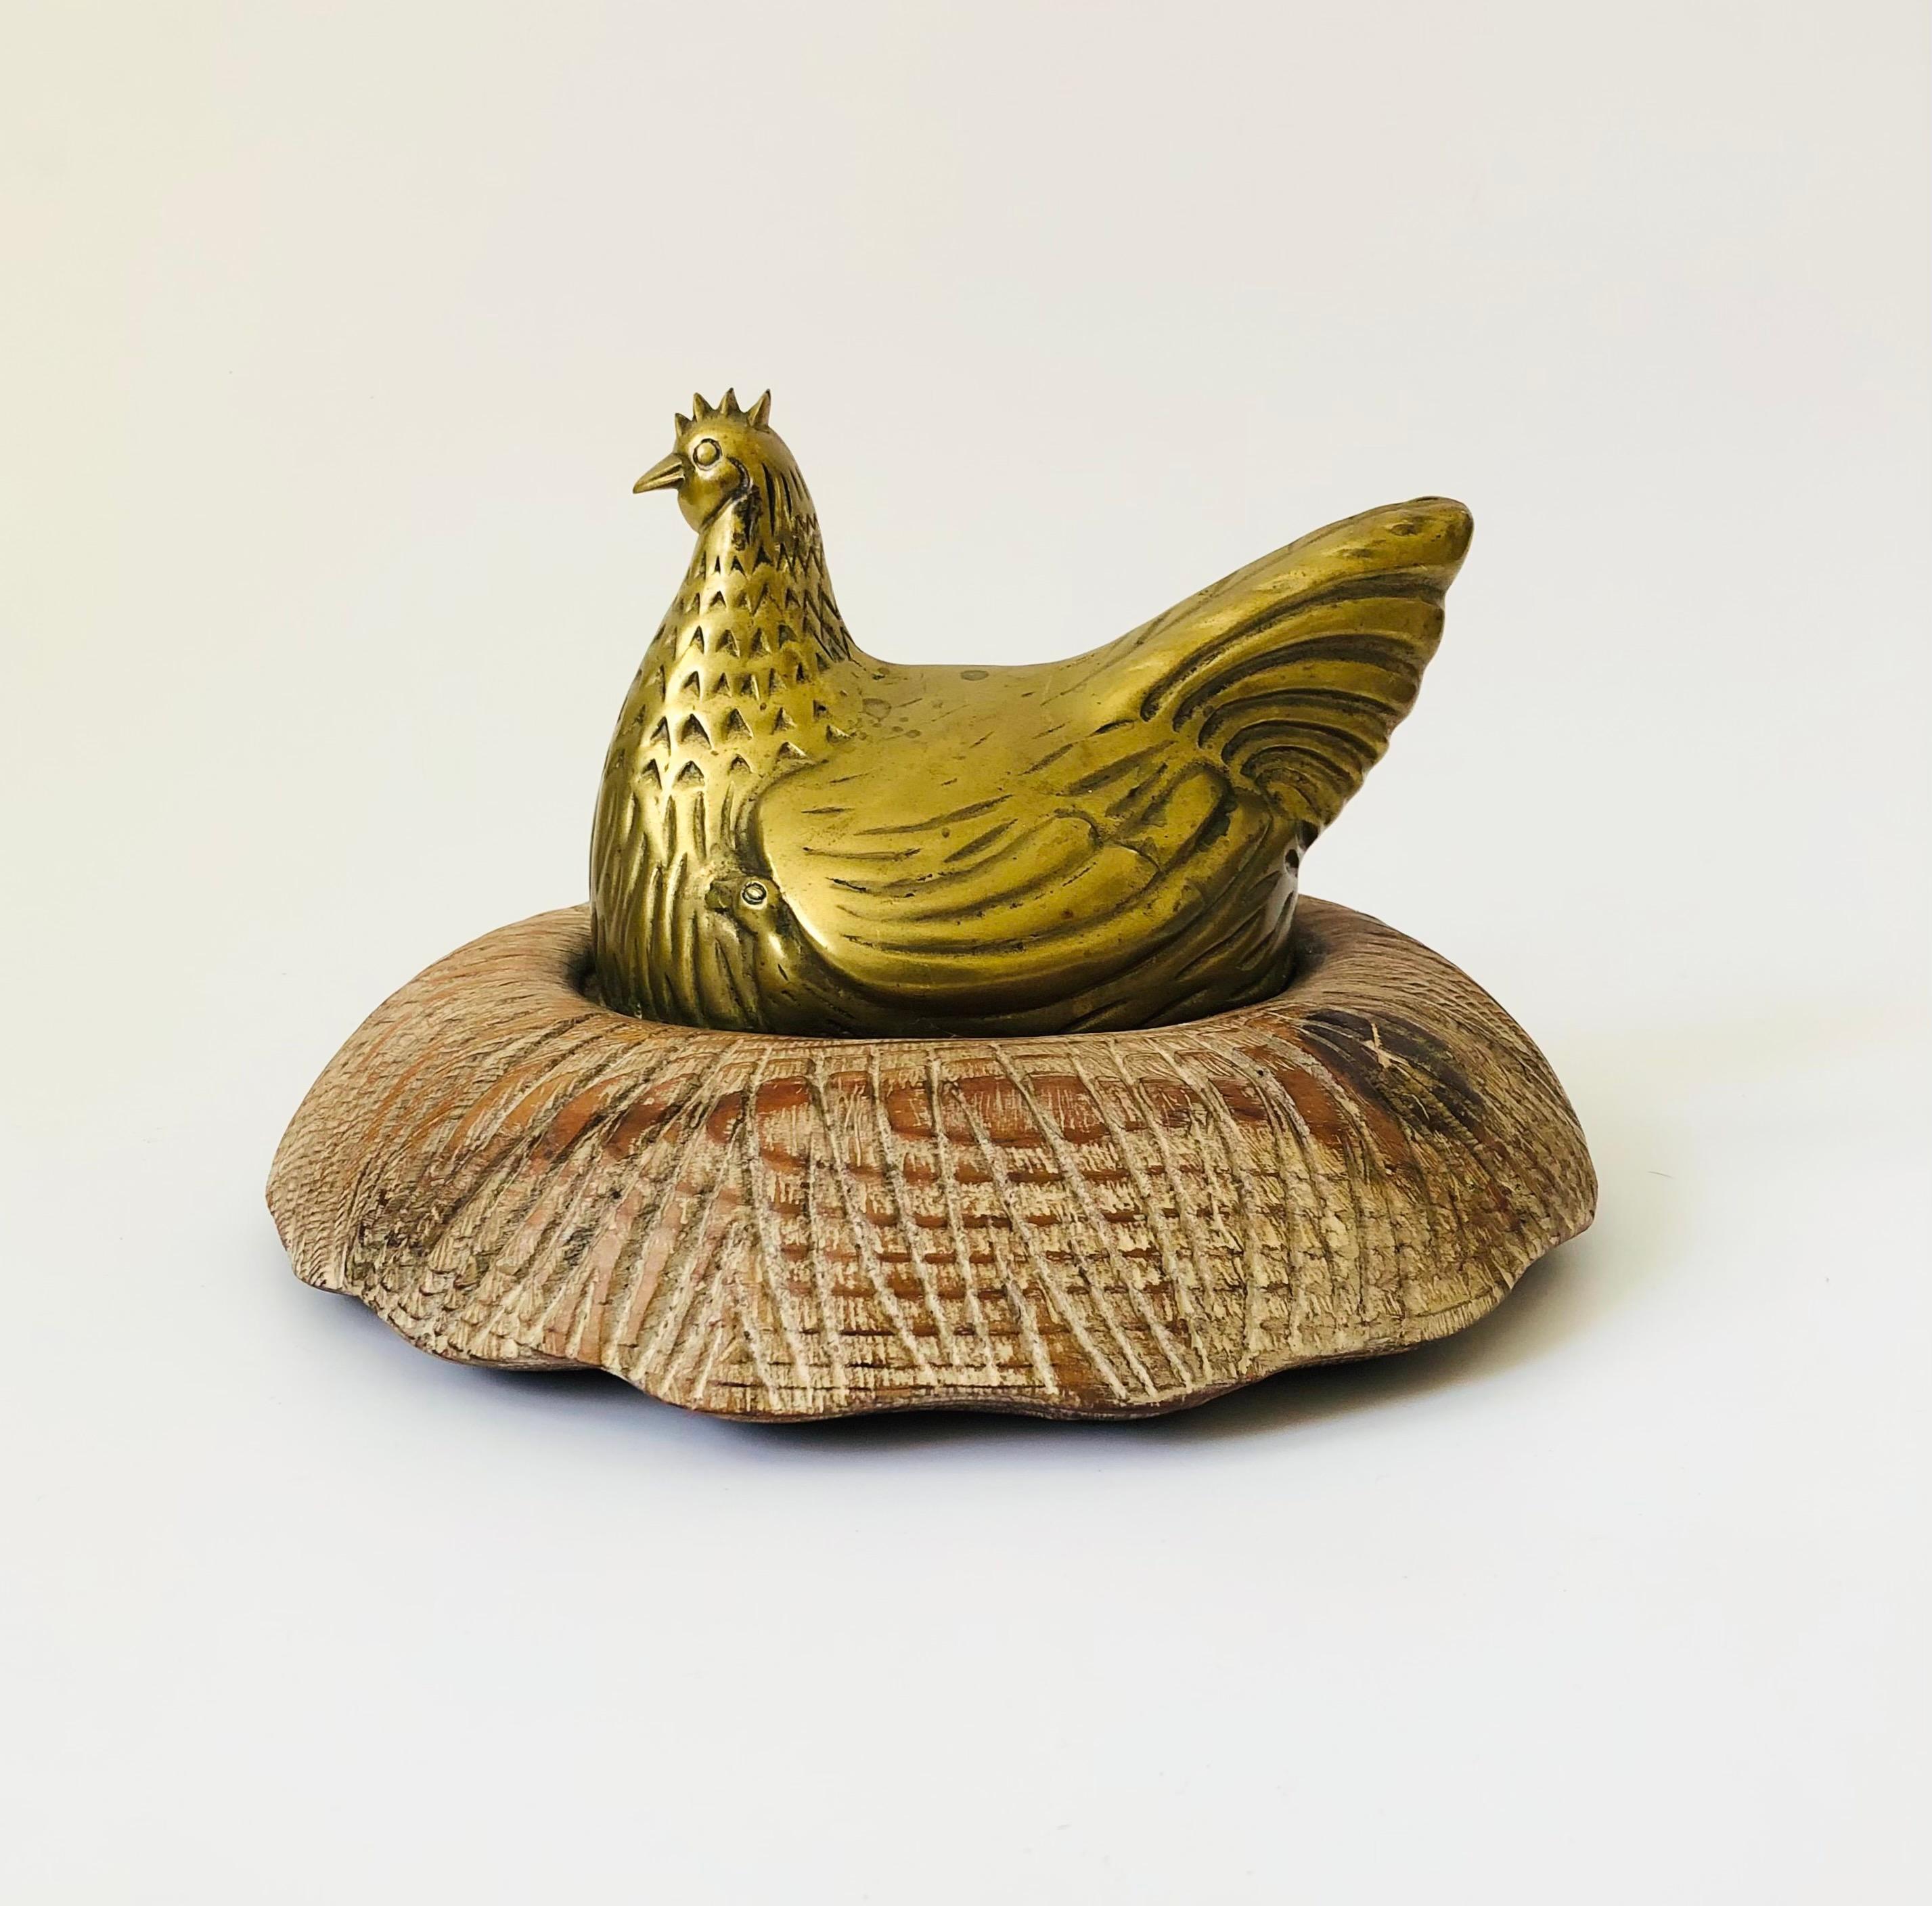 Une grande poule en laiton vintage assise dans un nid en bois sculpté. Le laiton présente de nombreux détails et le nid en bois est lavé à la chaux. L'étiquette d'origine n'est plus attachée, mais il s'agit très probablement d'une pièce de Sarried